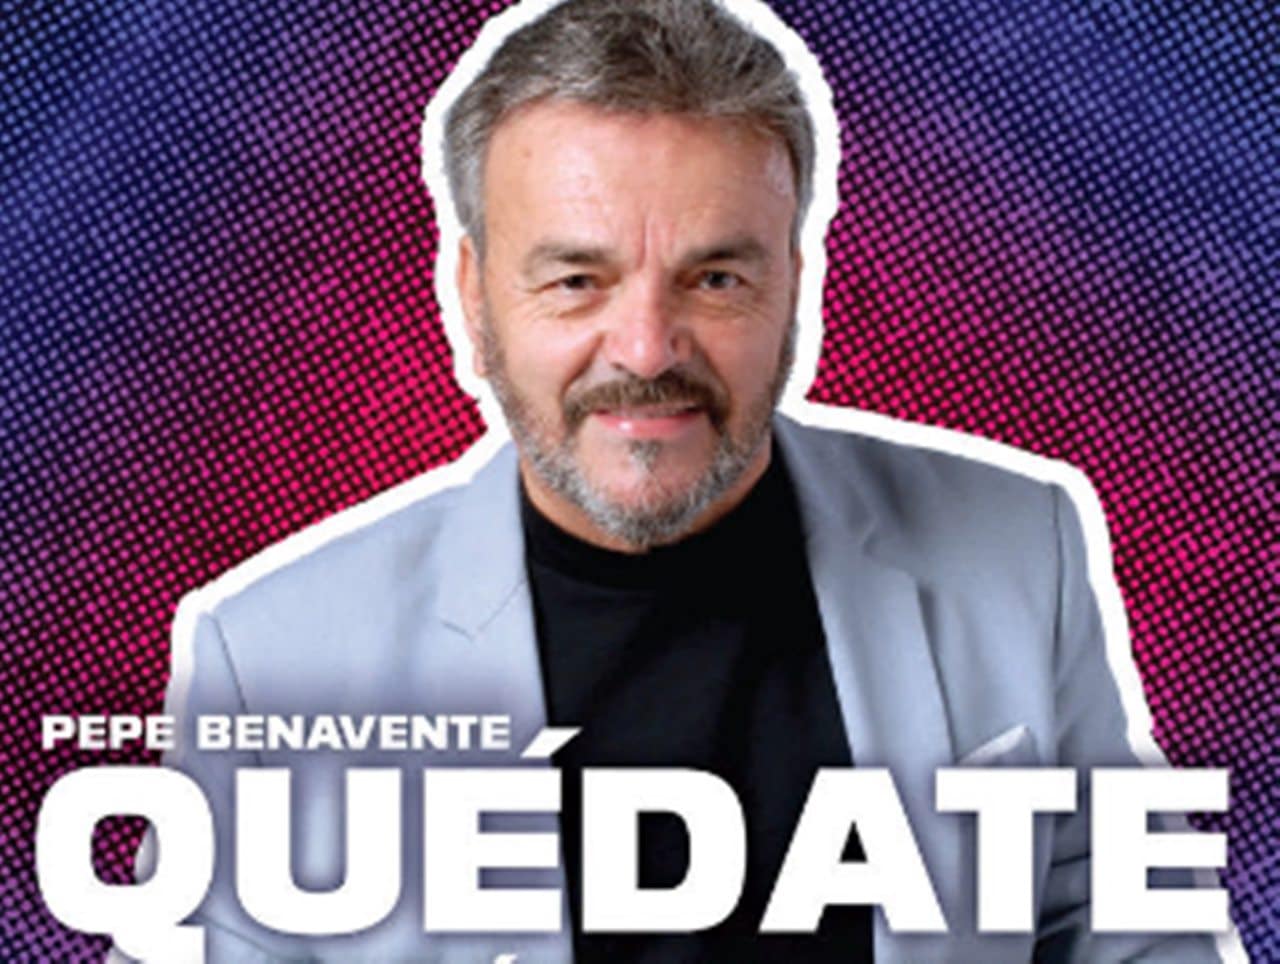 El cantante tinerfeño Pepe Benavente cuela su versión del 'Quédate' de Quevedo y Bizarrap en Spotify